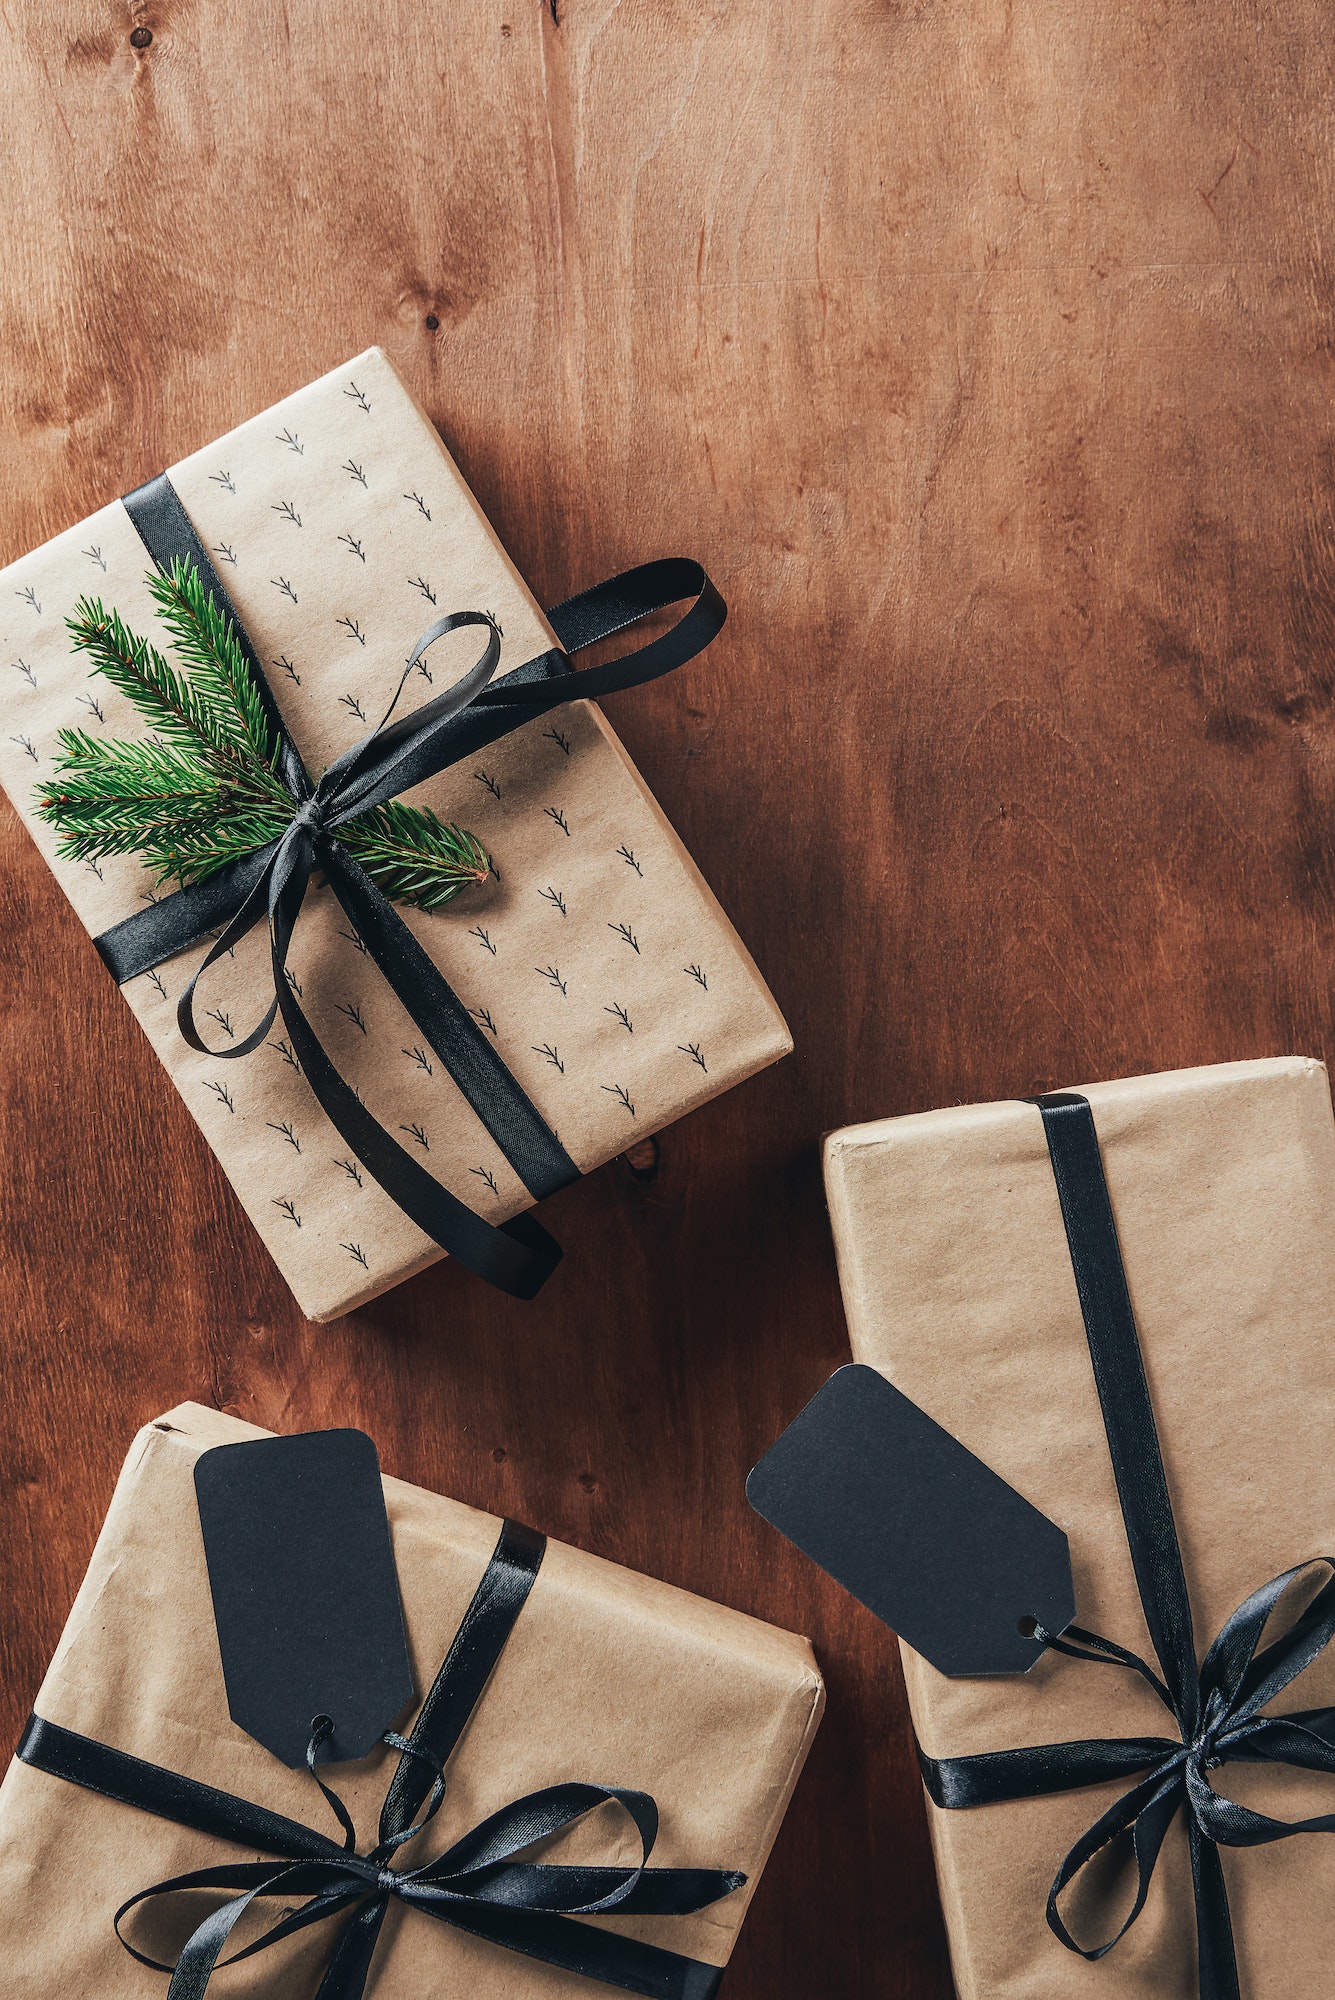 Comment personnaliser ses cadeaux avec des étiquettes ?